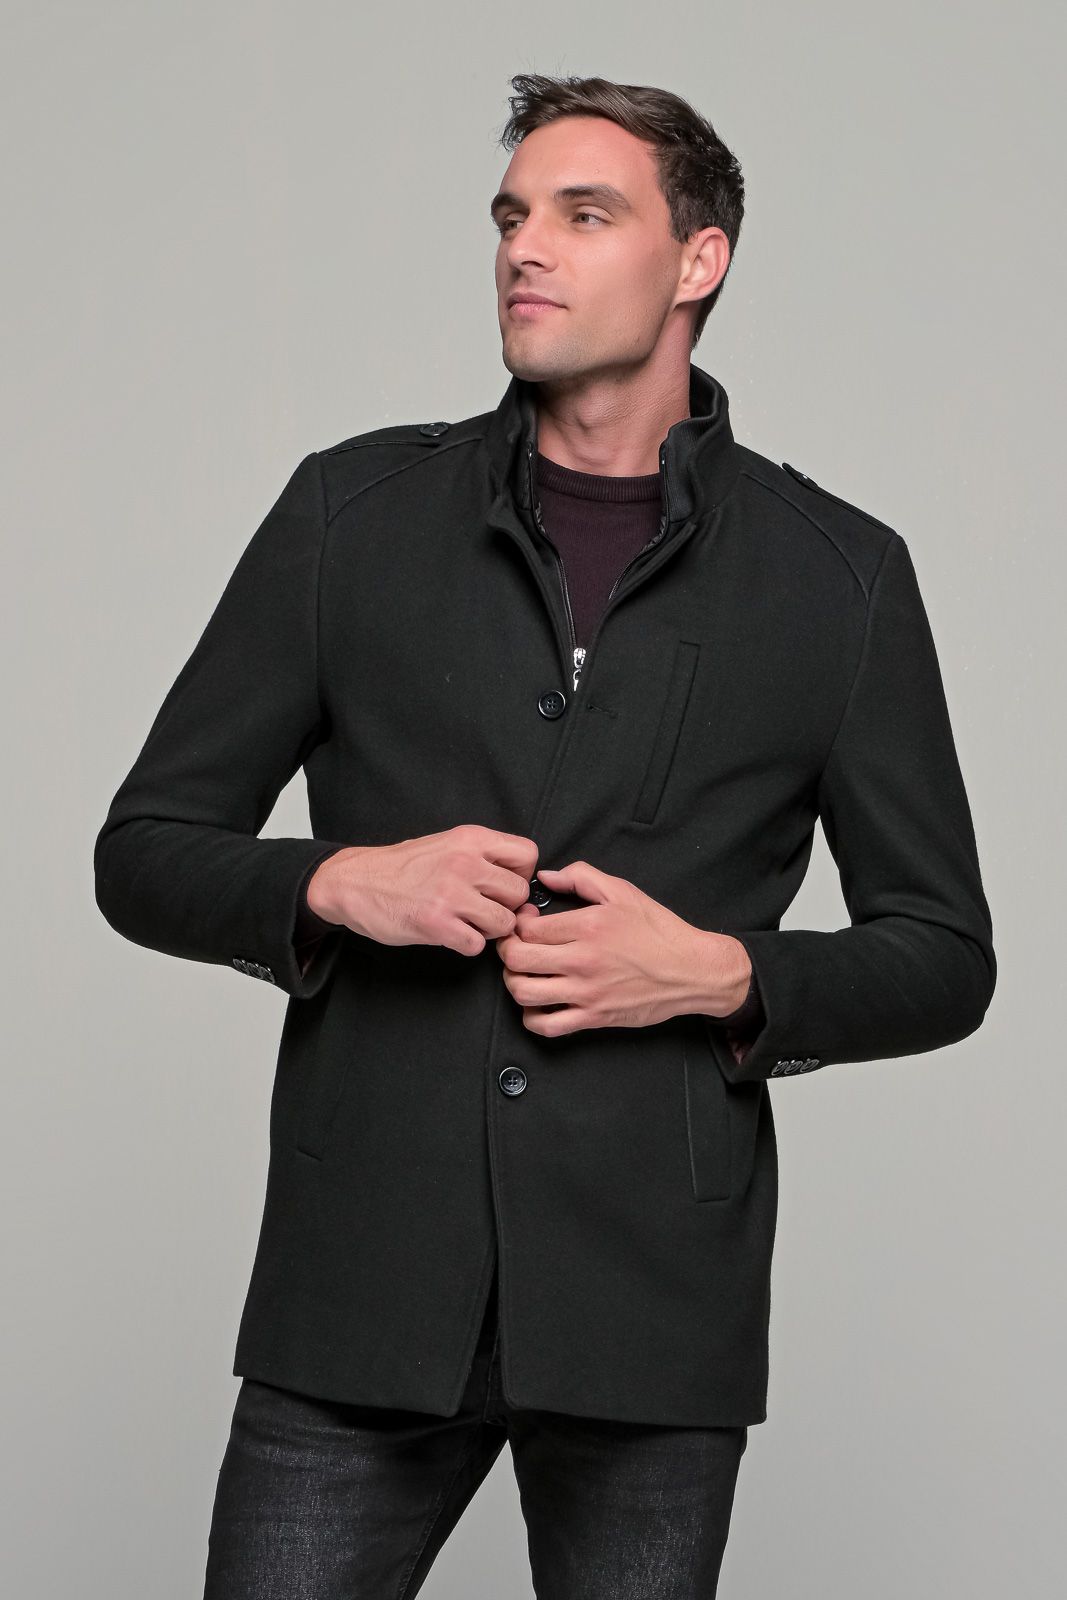 Μαύρο ανδρικό μάλλινο παλτό κοντό με αποσπώμενο γιλέκο